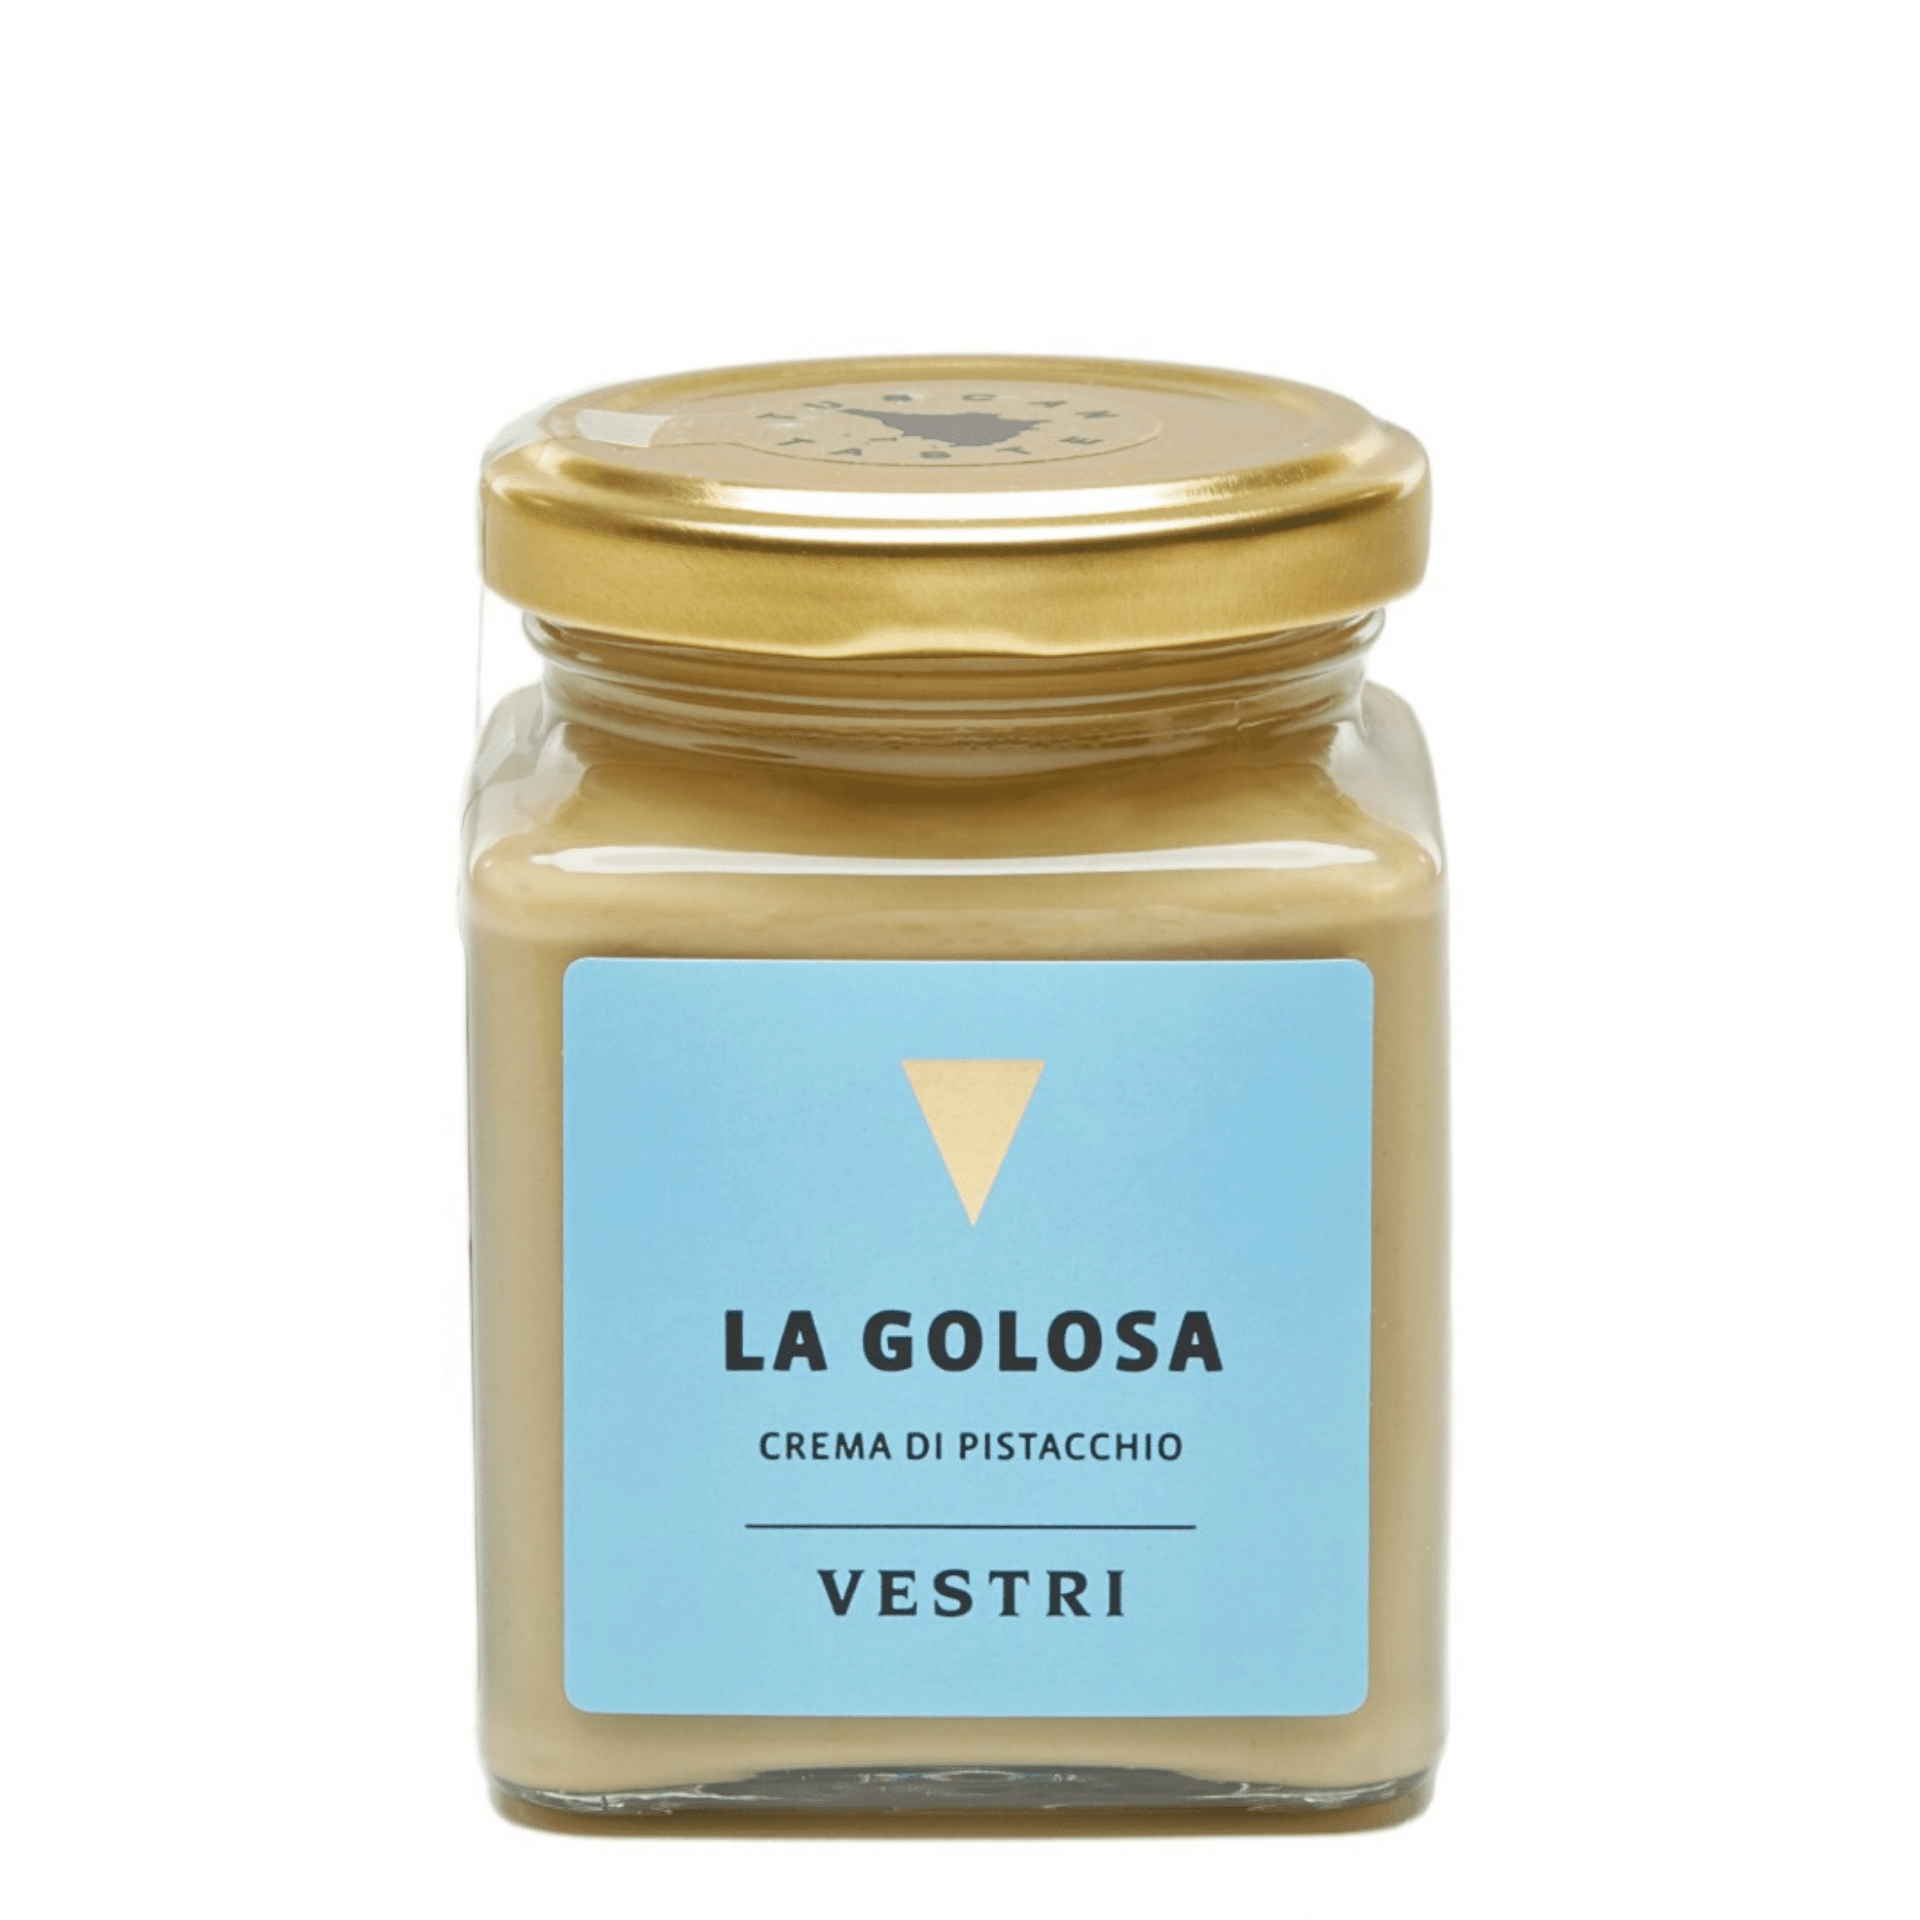 Tasty Ribbon Pistachio Spread "La Golosa"